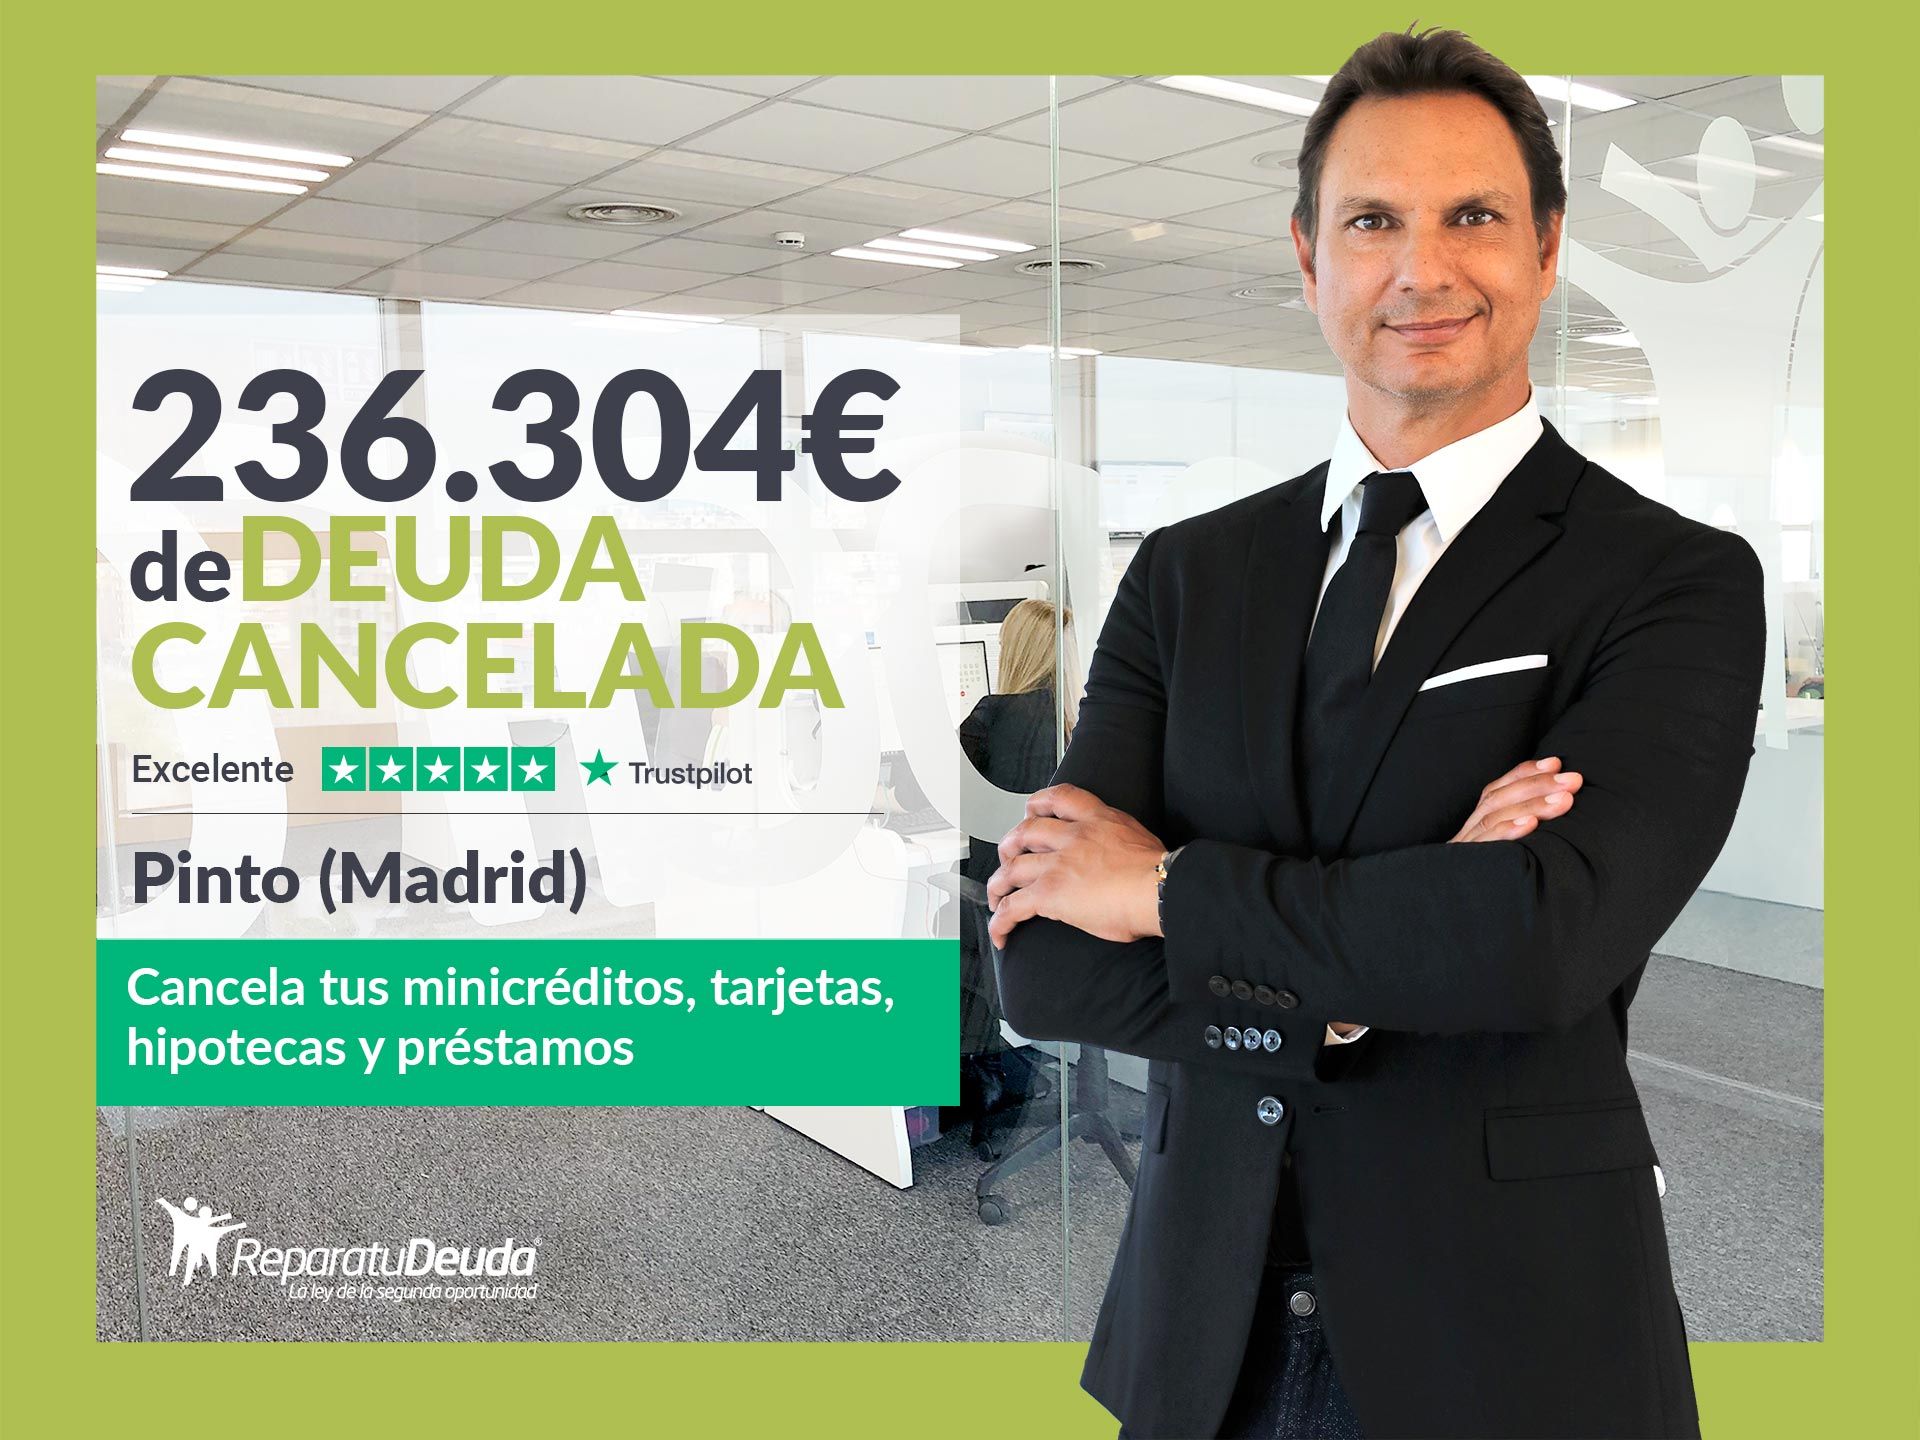 Repara tu Deuda Abogados cancela 236.304? en Pinto (Madrid) con la Ley de Segunda Oportunidad